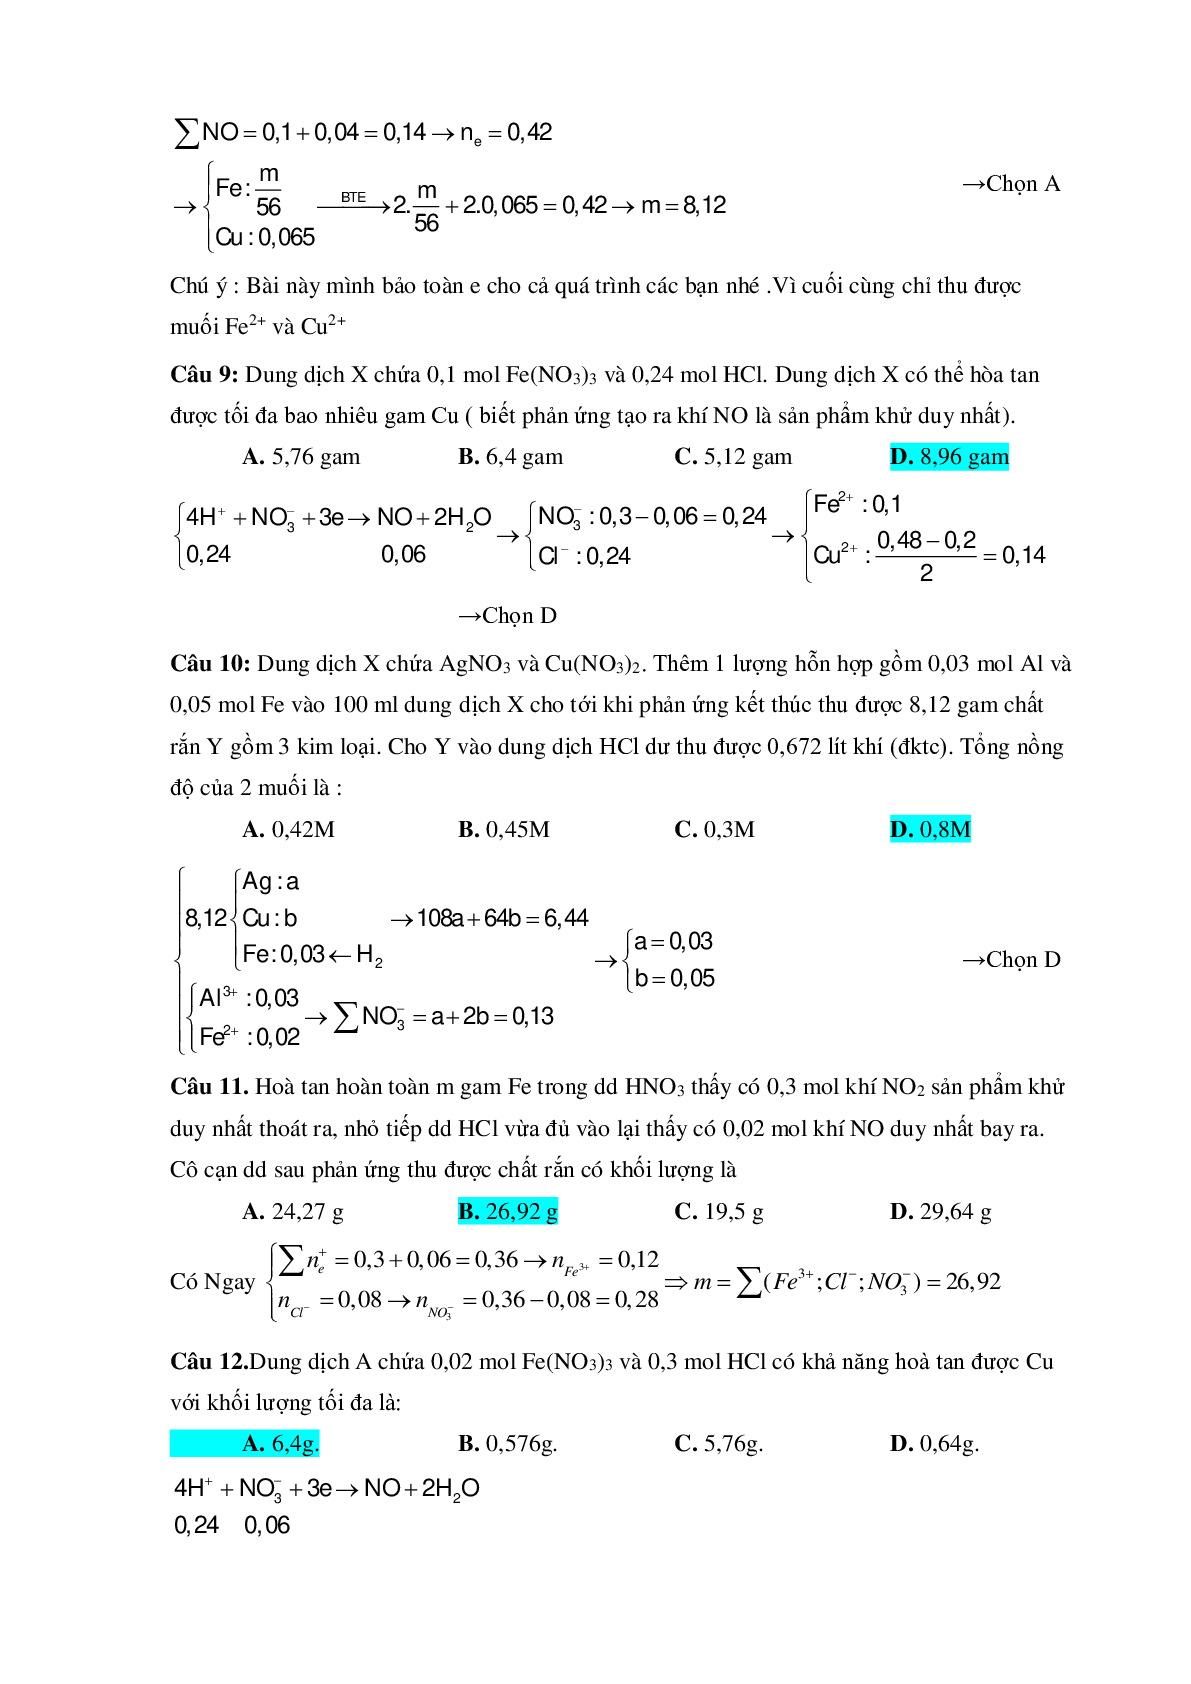 Bài tập về HNO3 vận dụng cao với phương pháp bảo toàn electron có đáp án (trang 4)